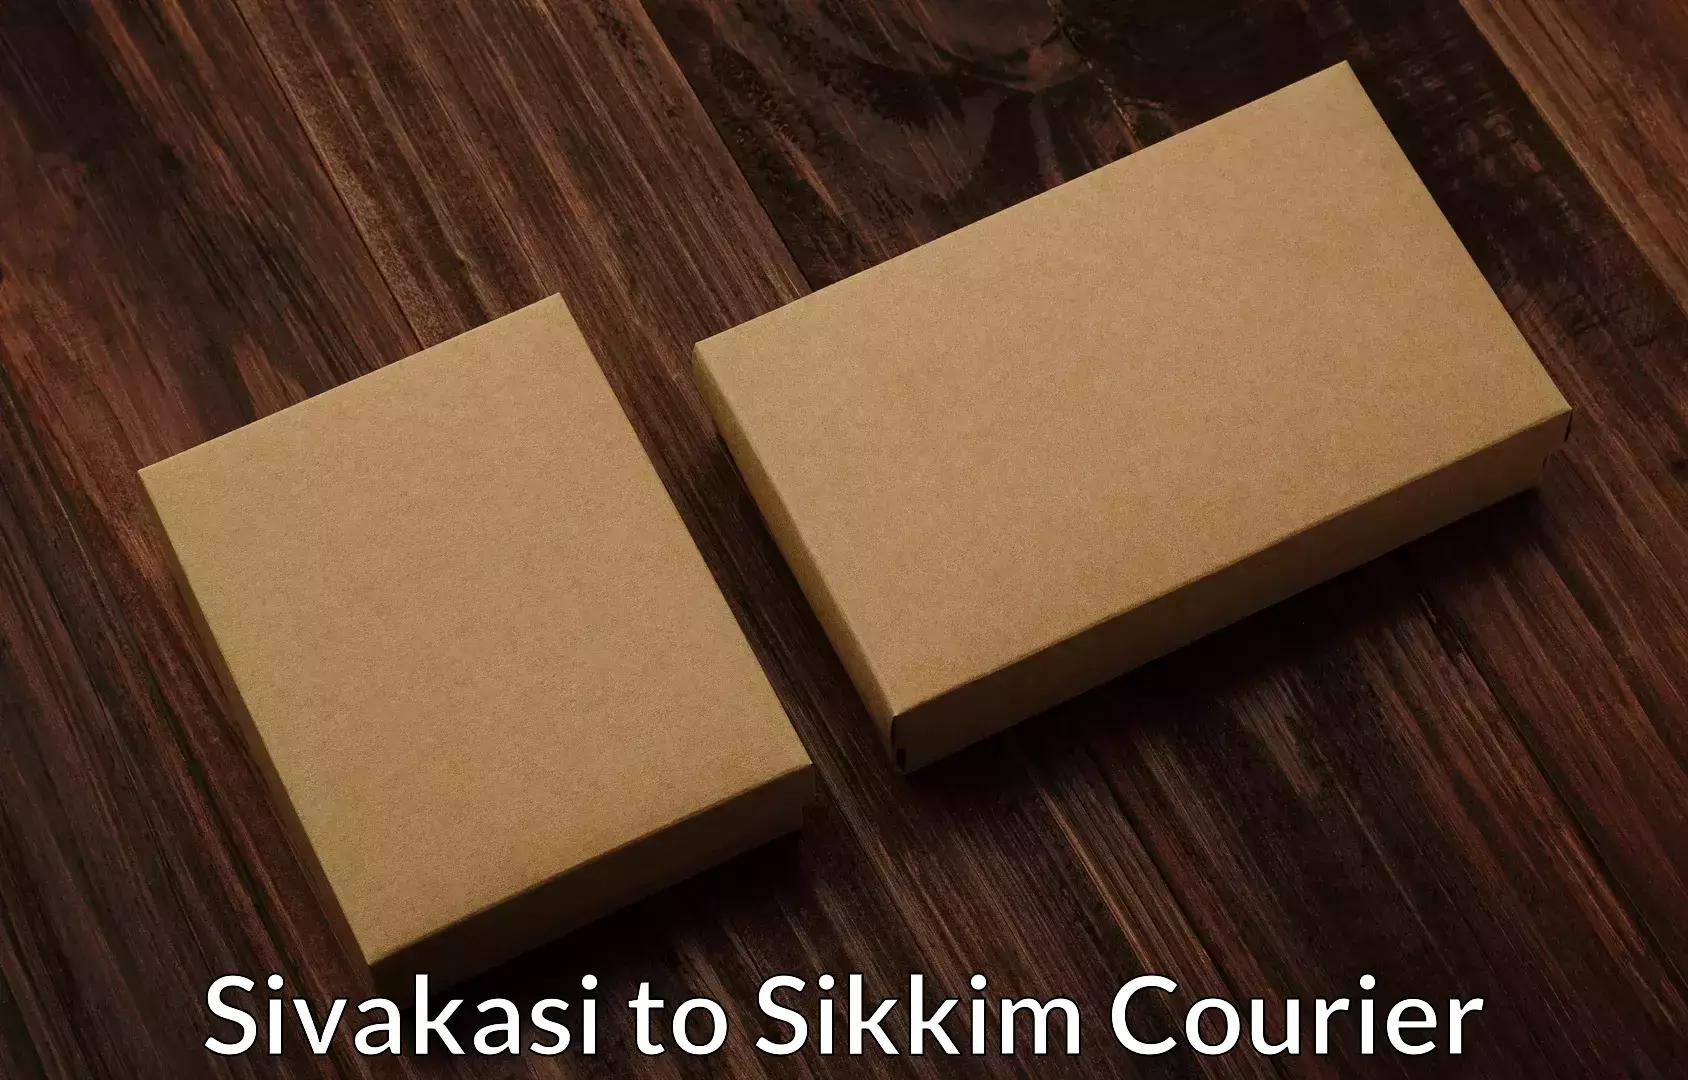 Skilled furniture transporters Sivakasi to Pelling